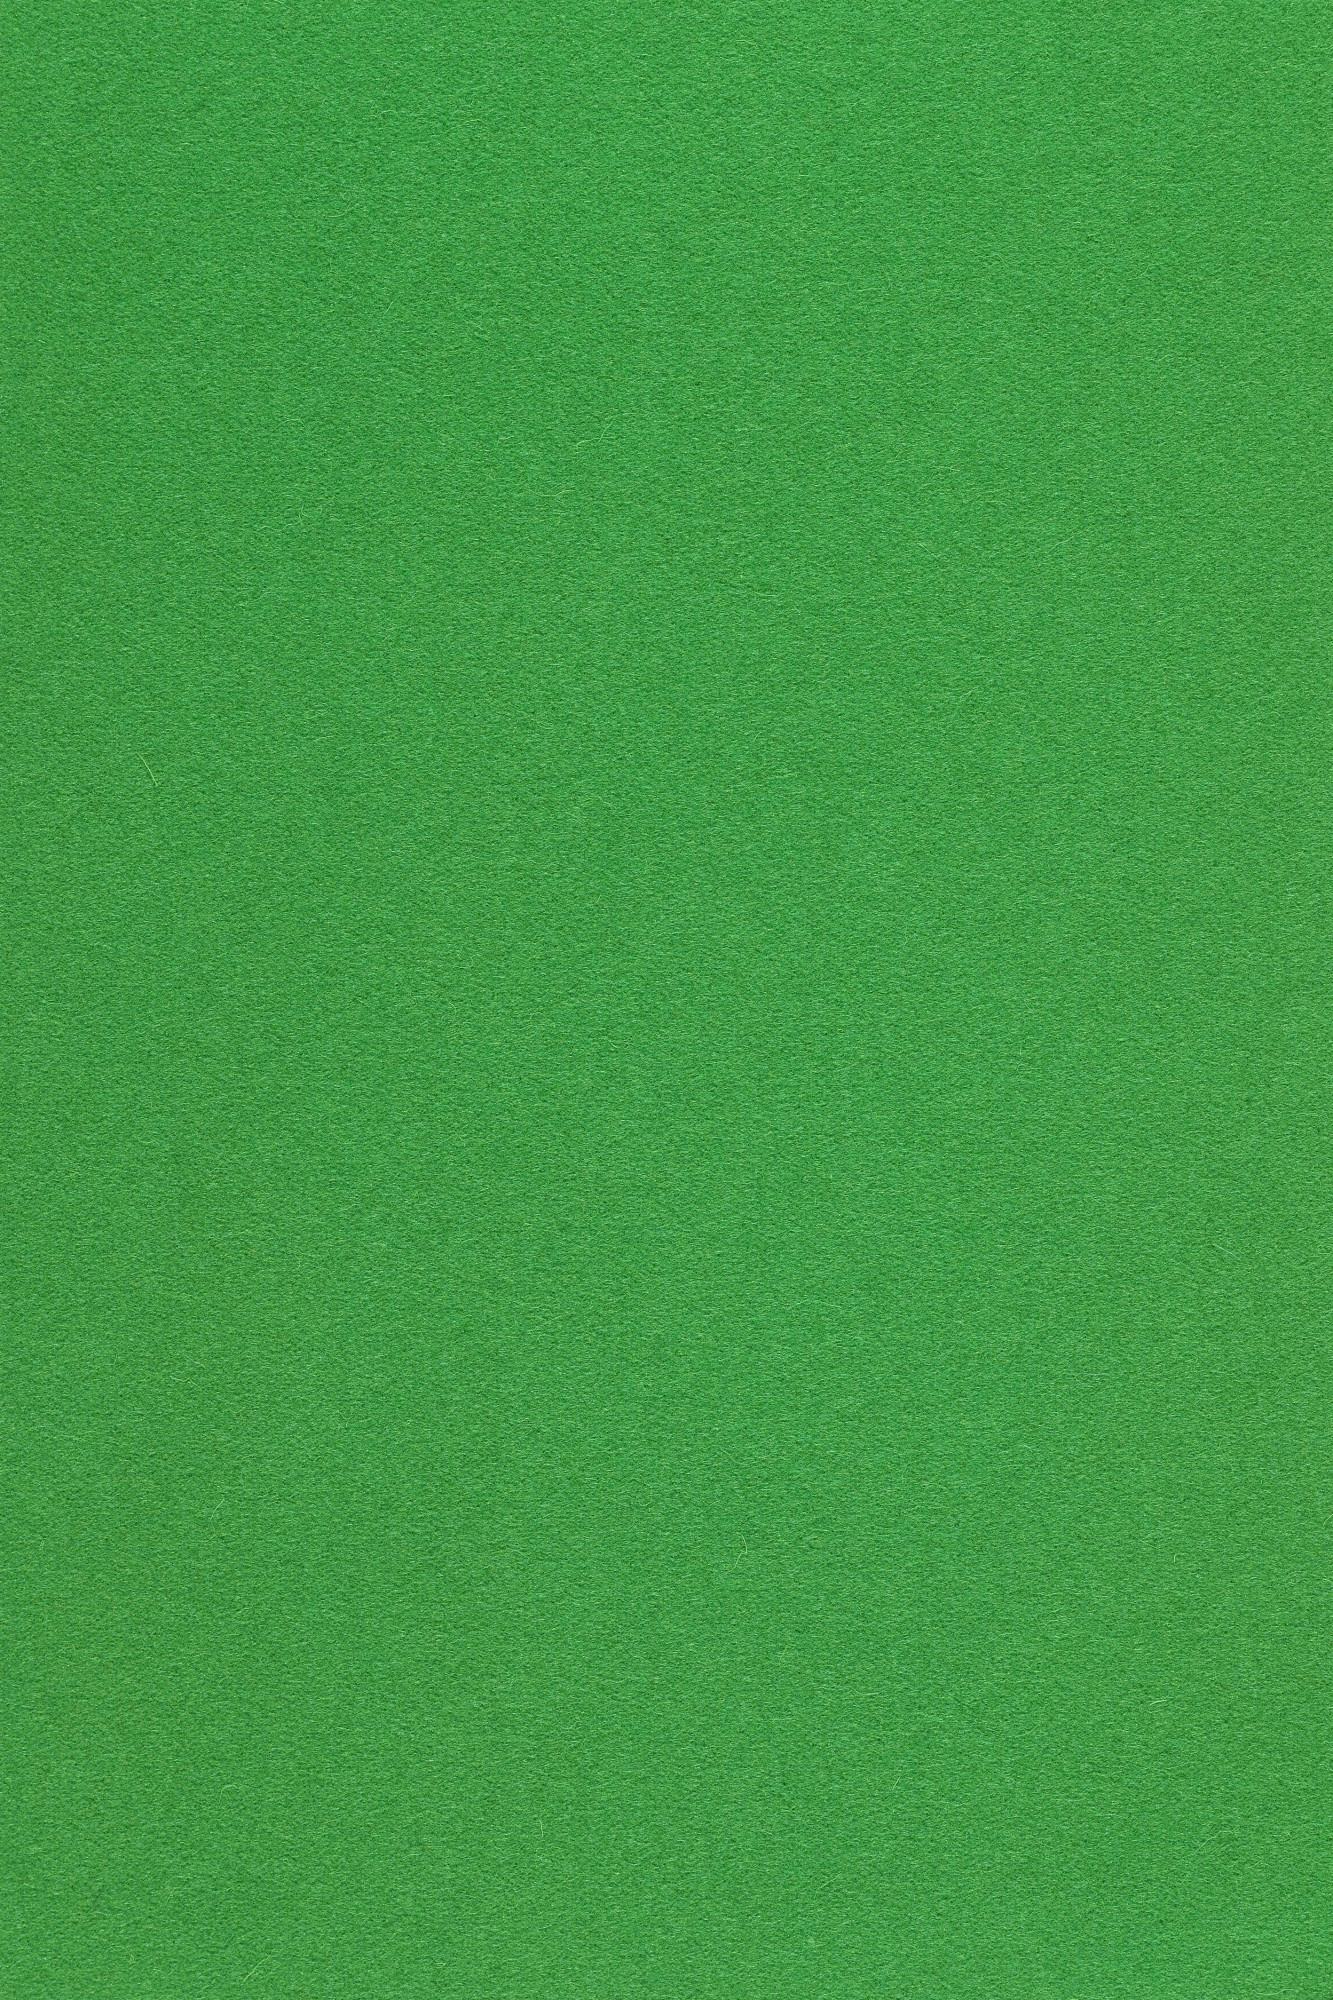 Fabric sample Divina 3 922 green